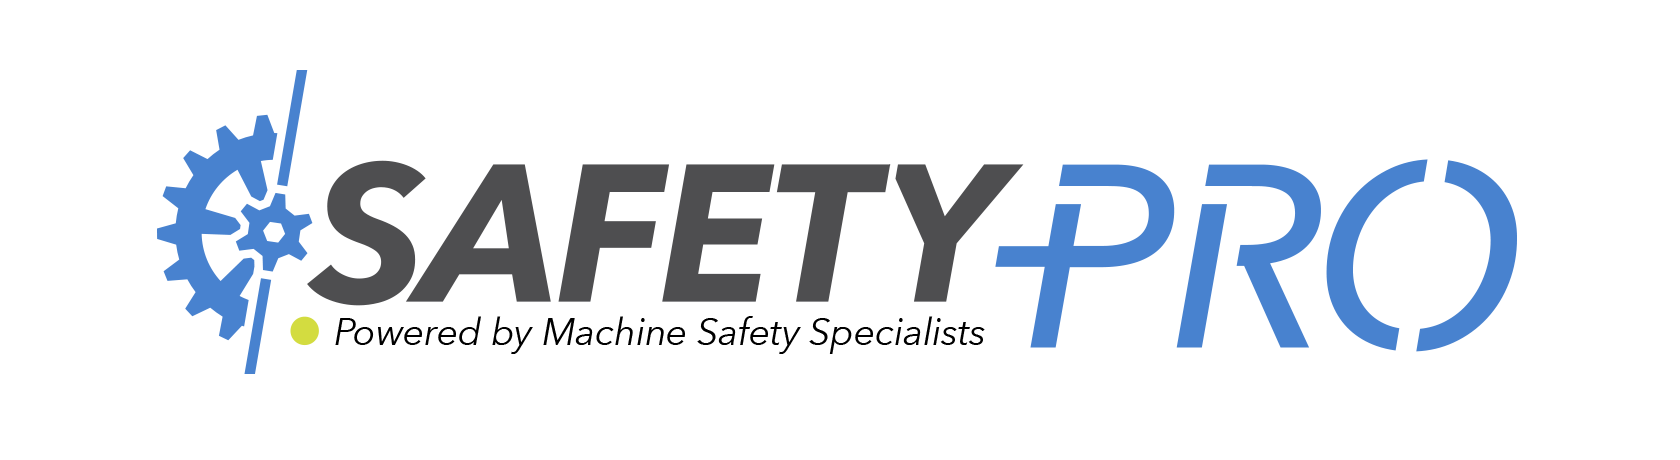 Machine SafetyPro App | Machine Safety Specialists